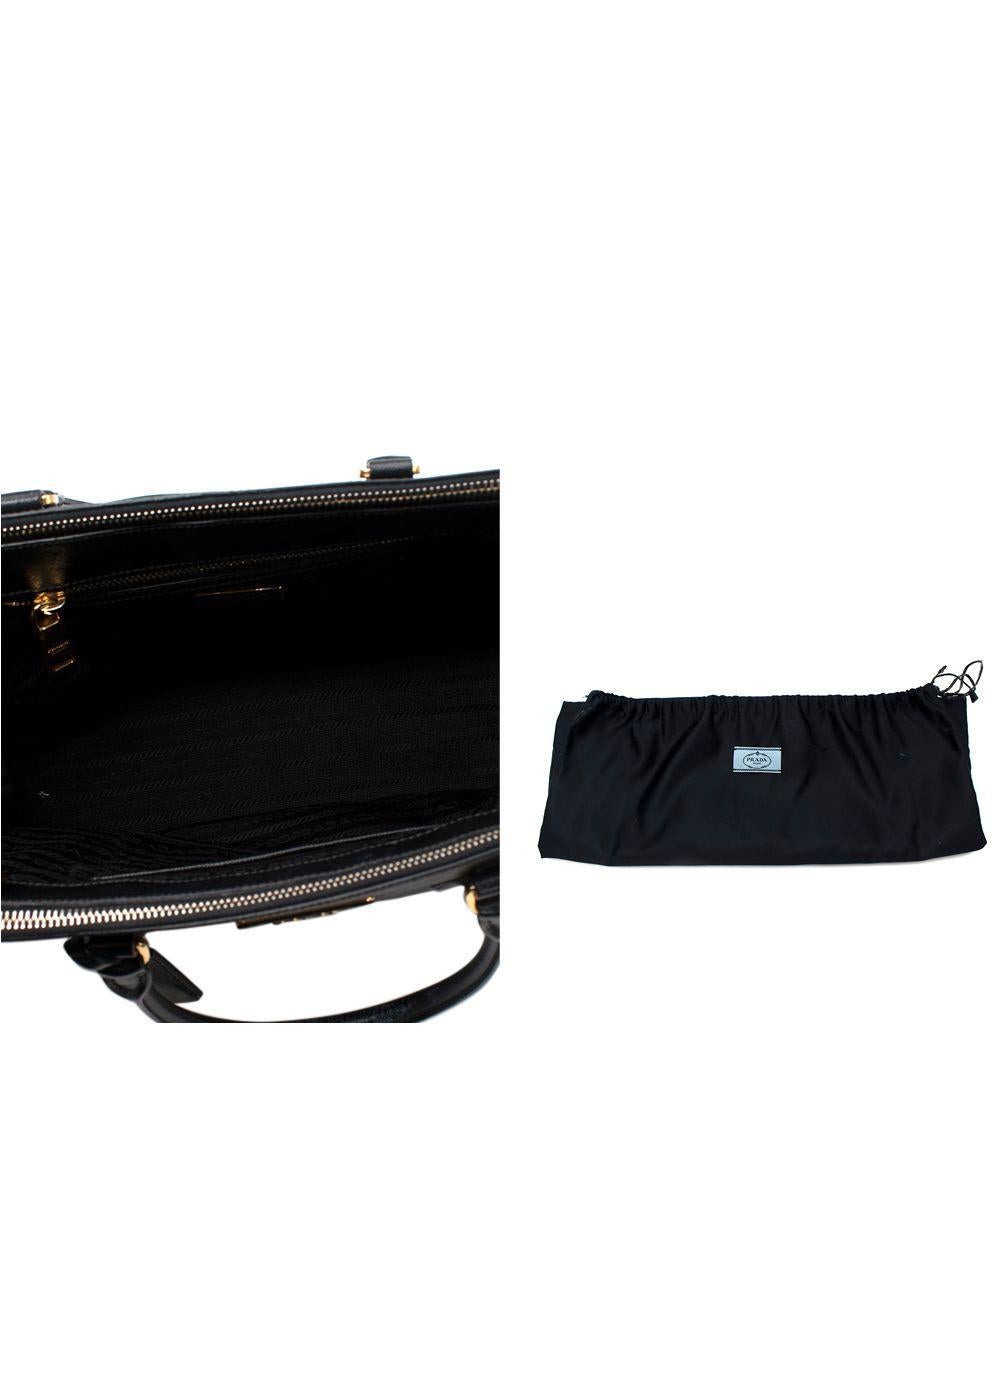 Prada Black Saffiano Leather Galleria Tote Bag For Sale 3